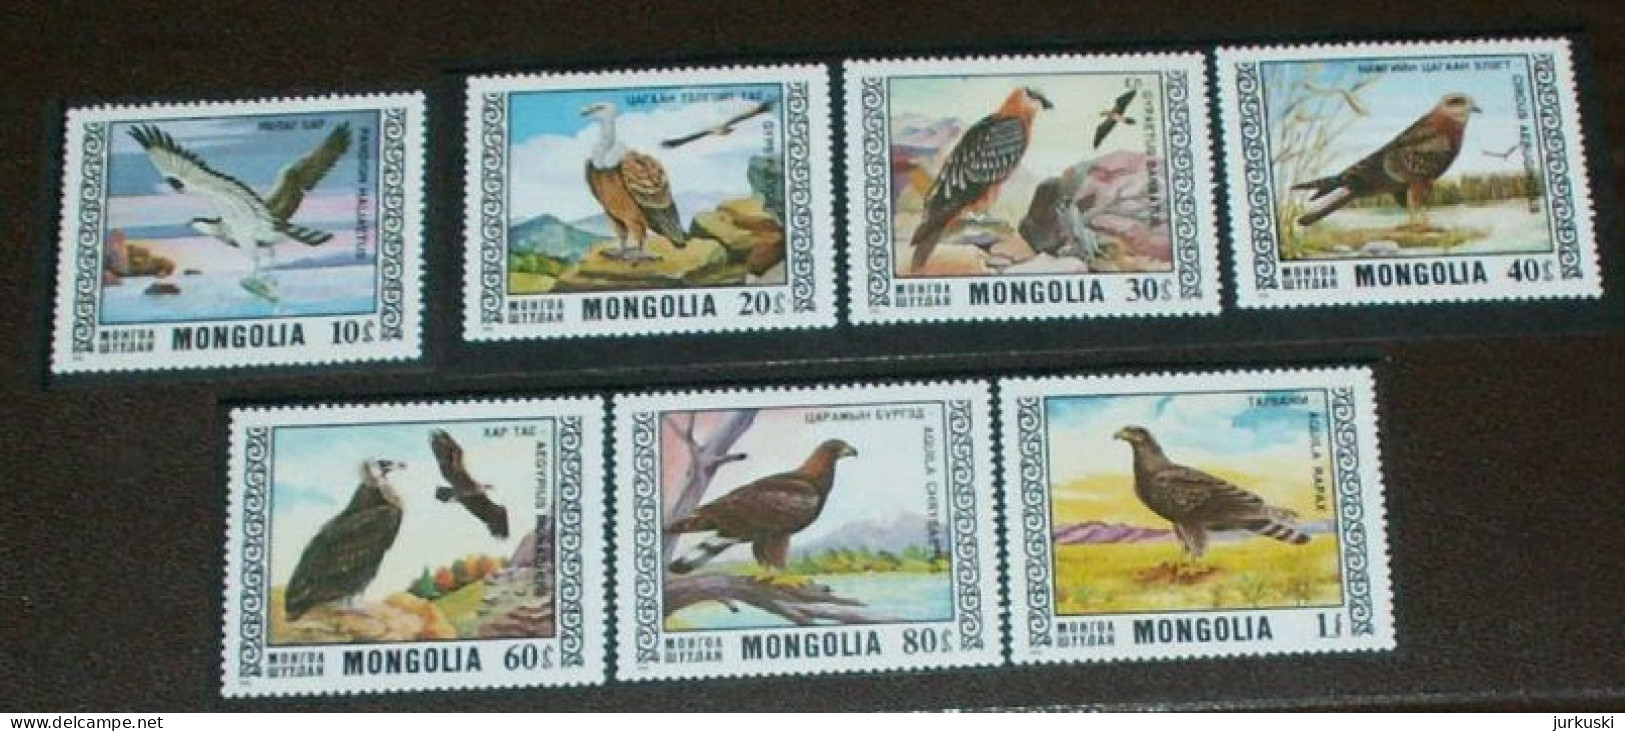 Mongolia 1976 - Mi.1009-15 - Birds - MNH - Mongolia